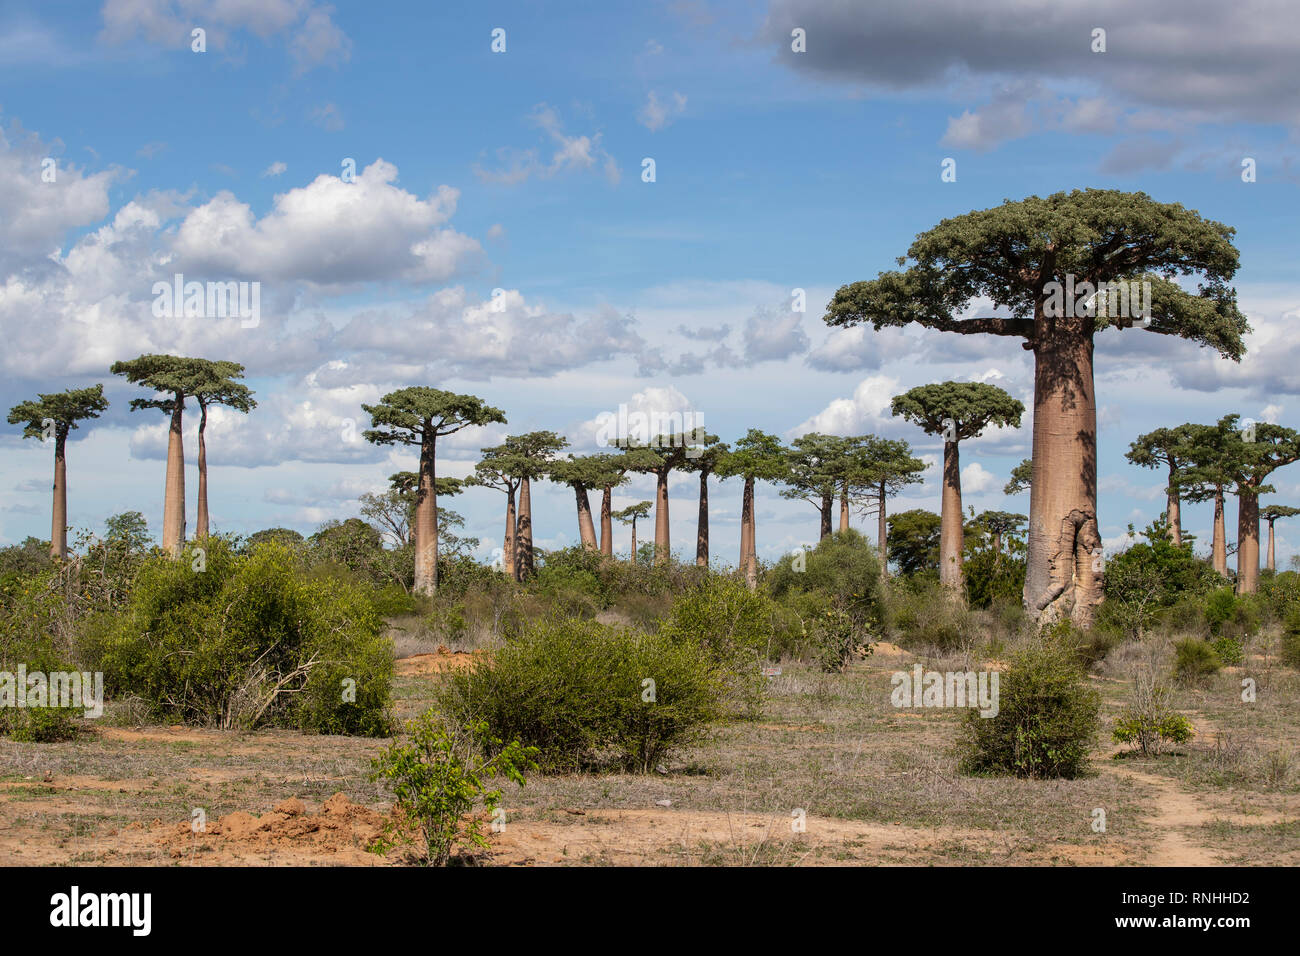 Forêt de baobabs du Grandidier, Madagascar (Adansonia grandidieri) Banque D'Images